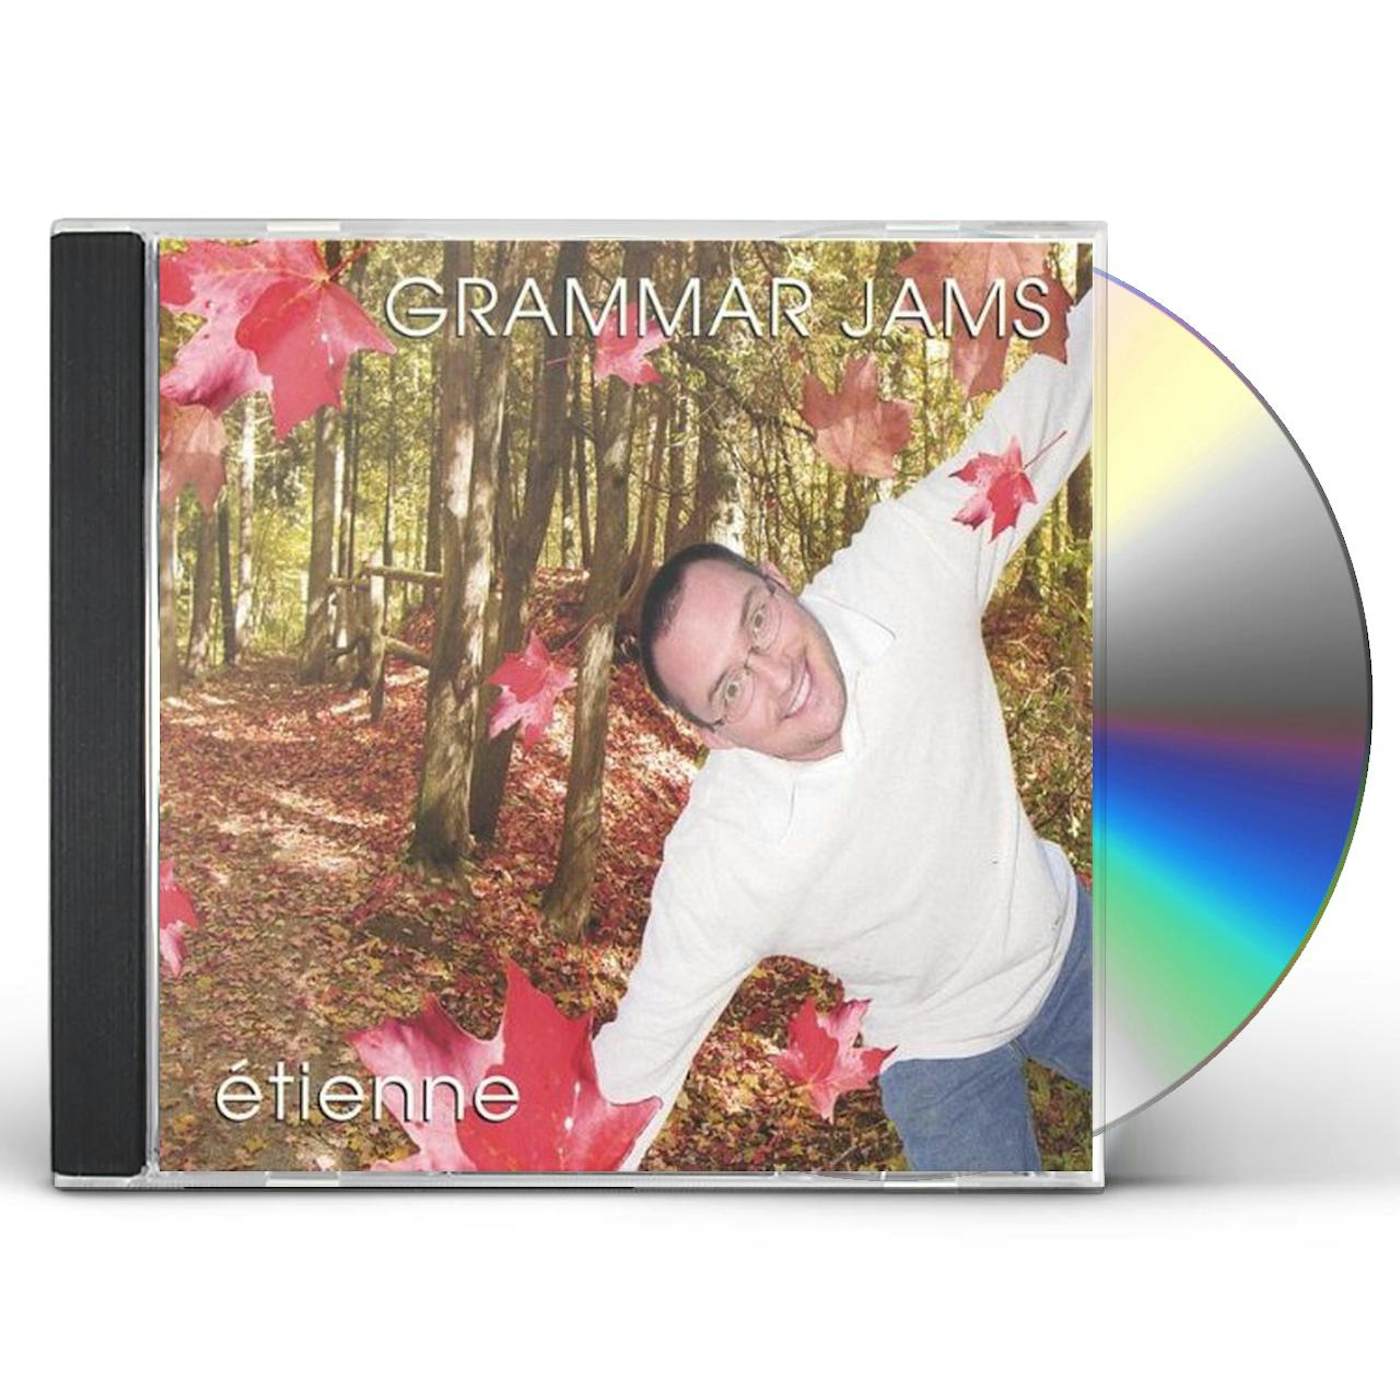 Etienne GRAMMAR JAMS 1 CD